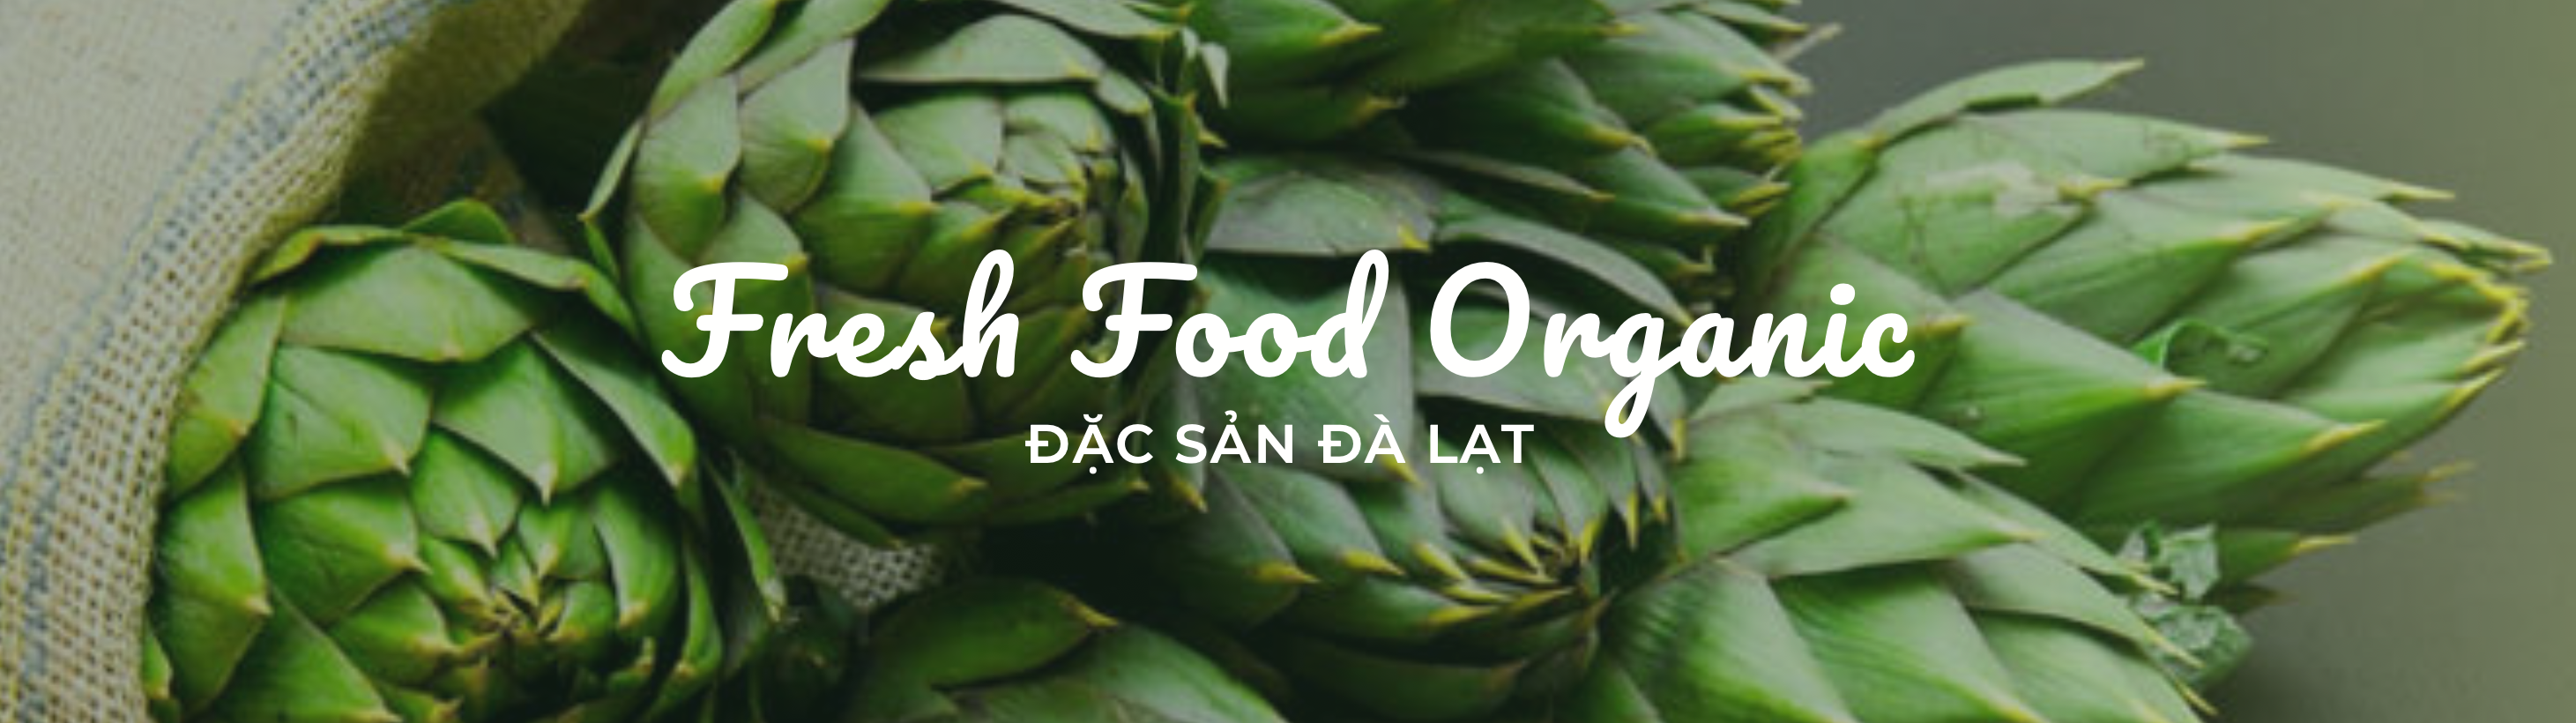 Fresh Food Organic, ĐẶC SẢN ĐÀ LẠT